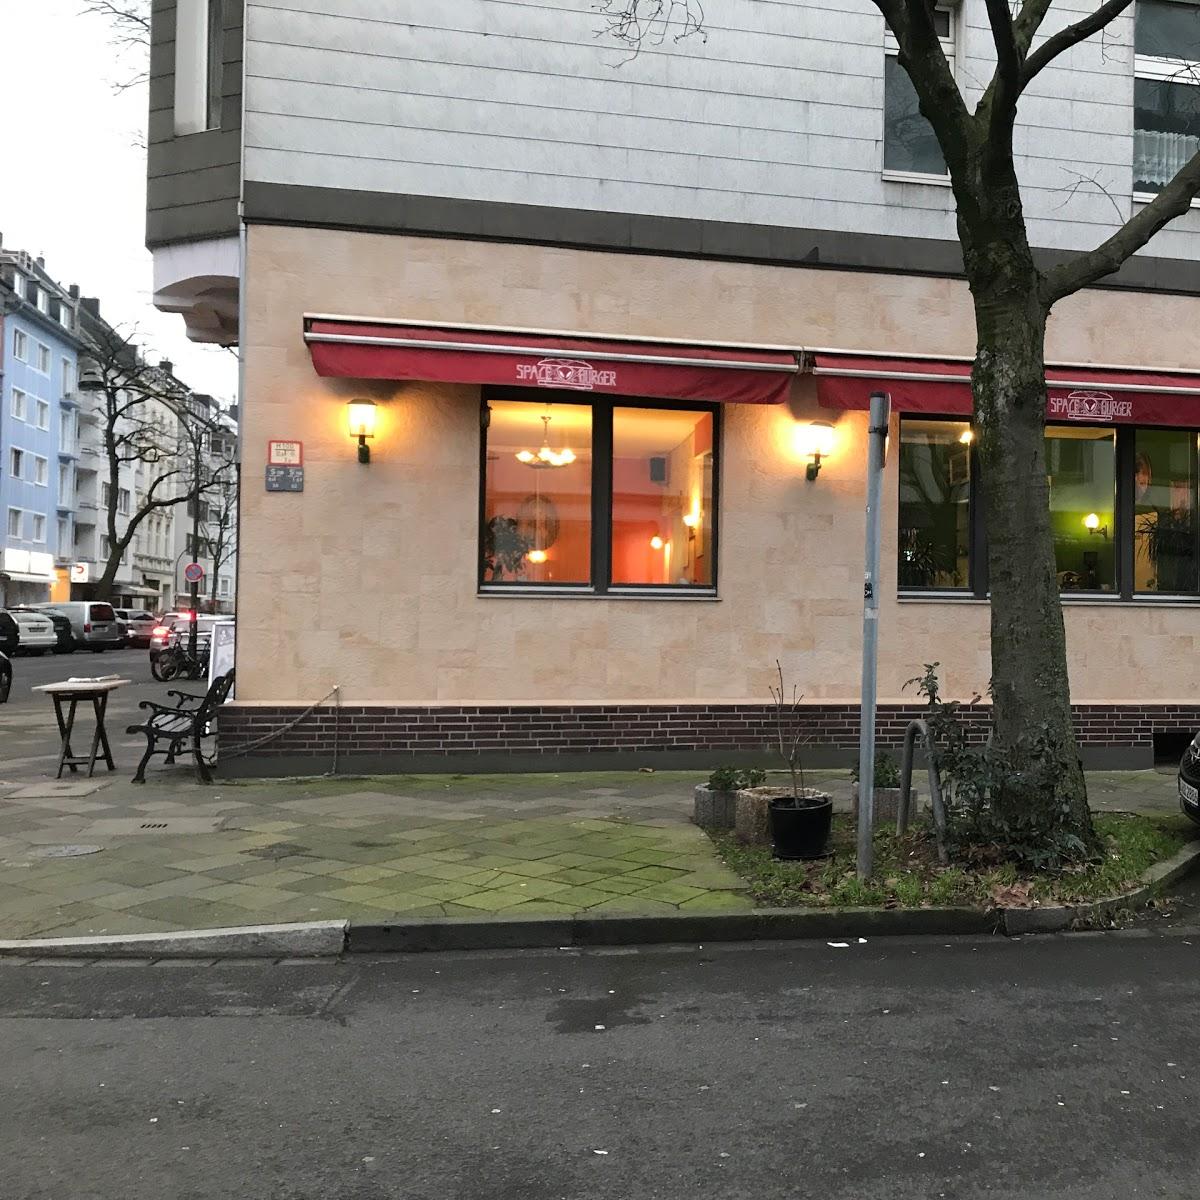 Restaurant "Space Burger" in Düsseldorf